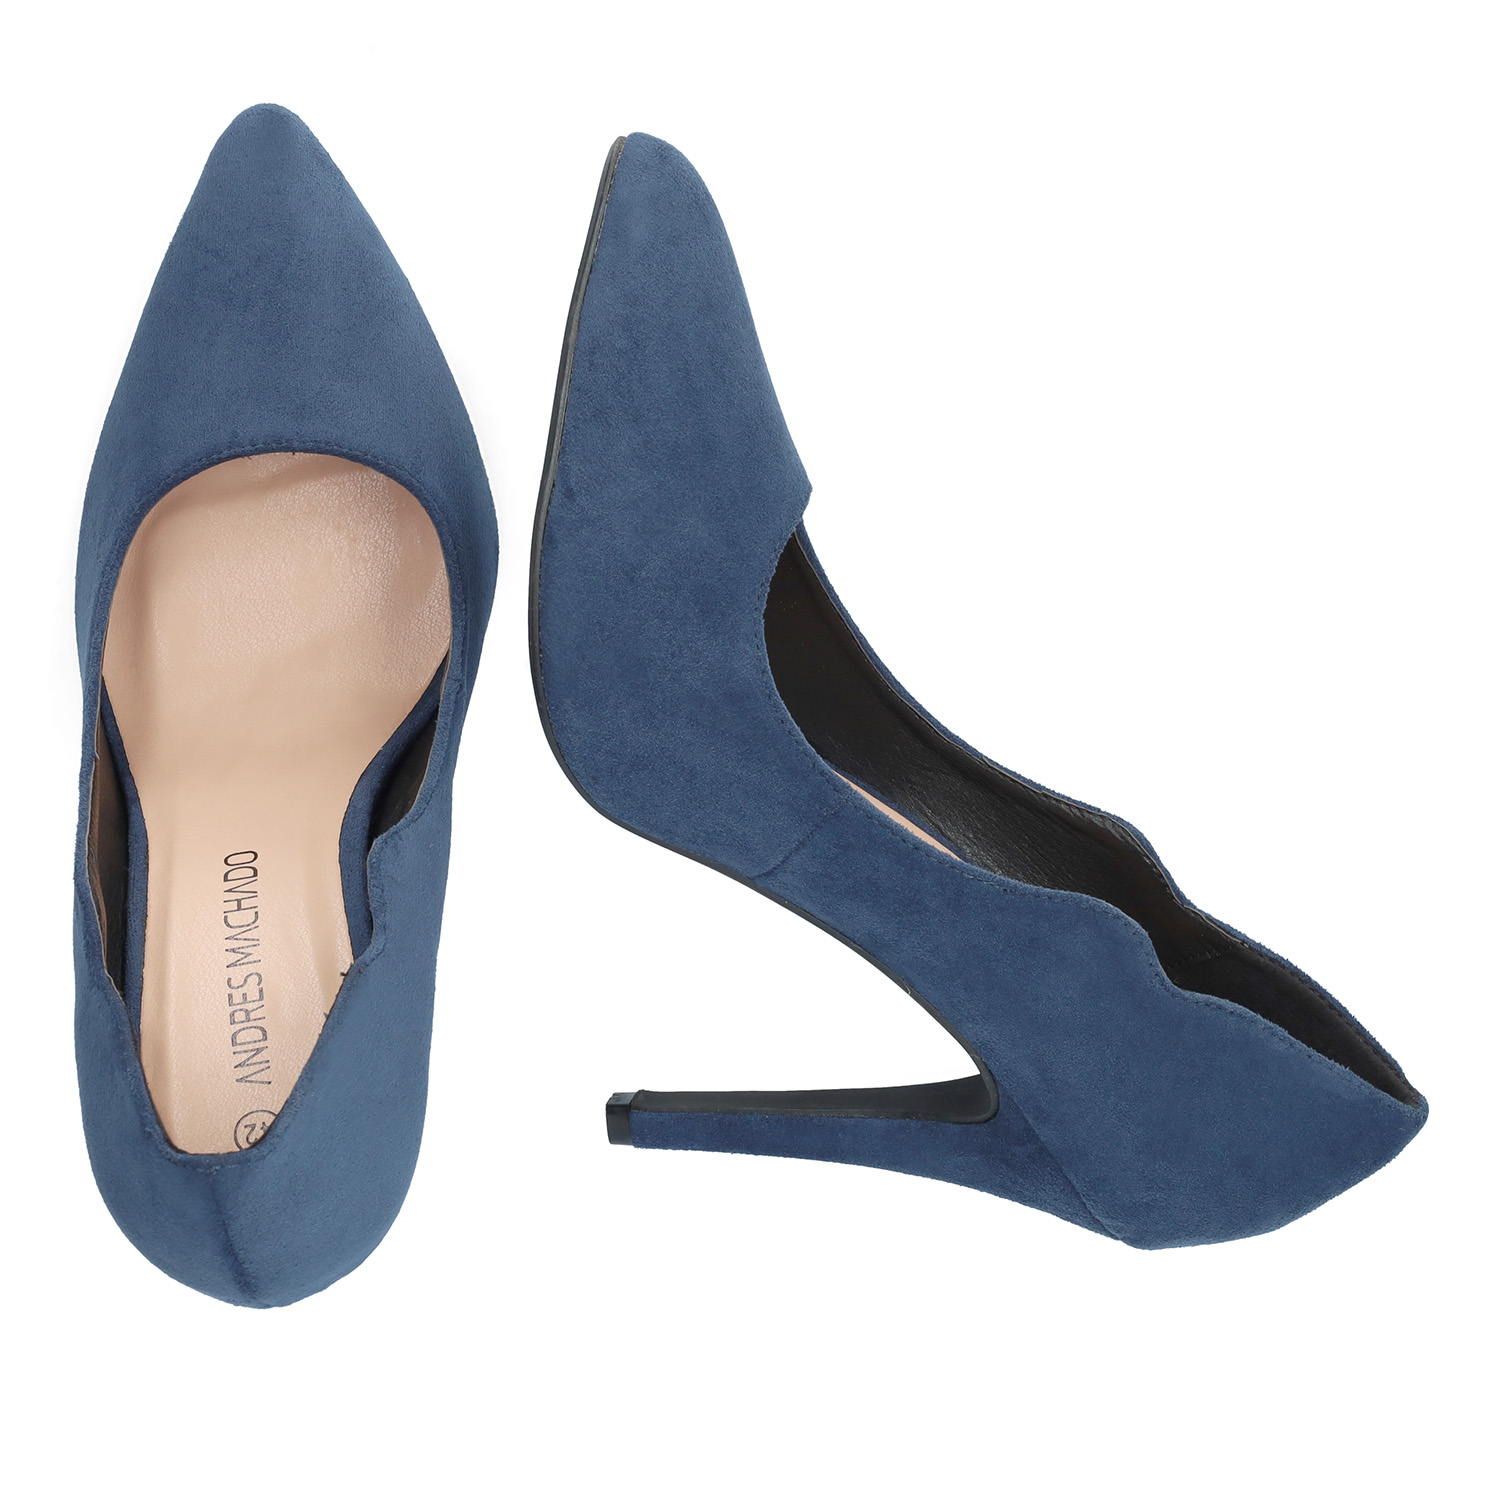 Fine tip stilettos in dark blue faux suede. 